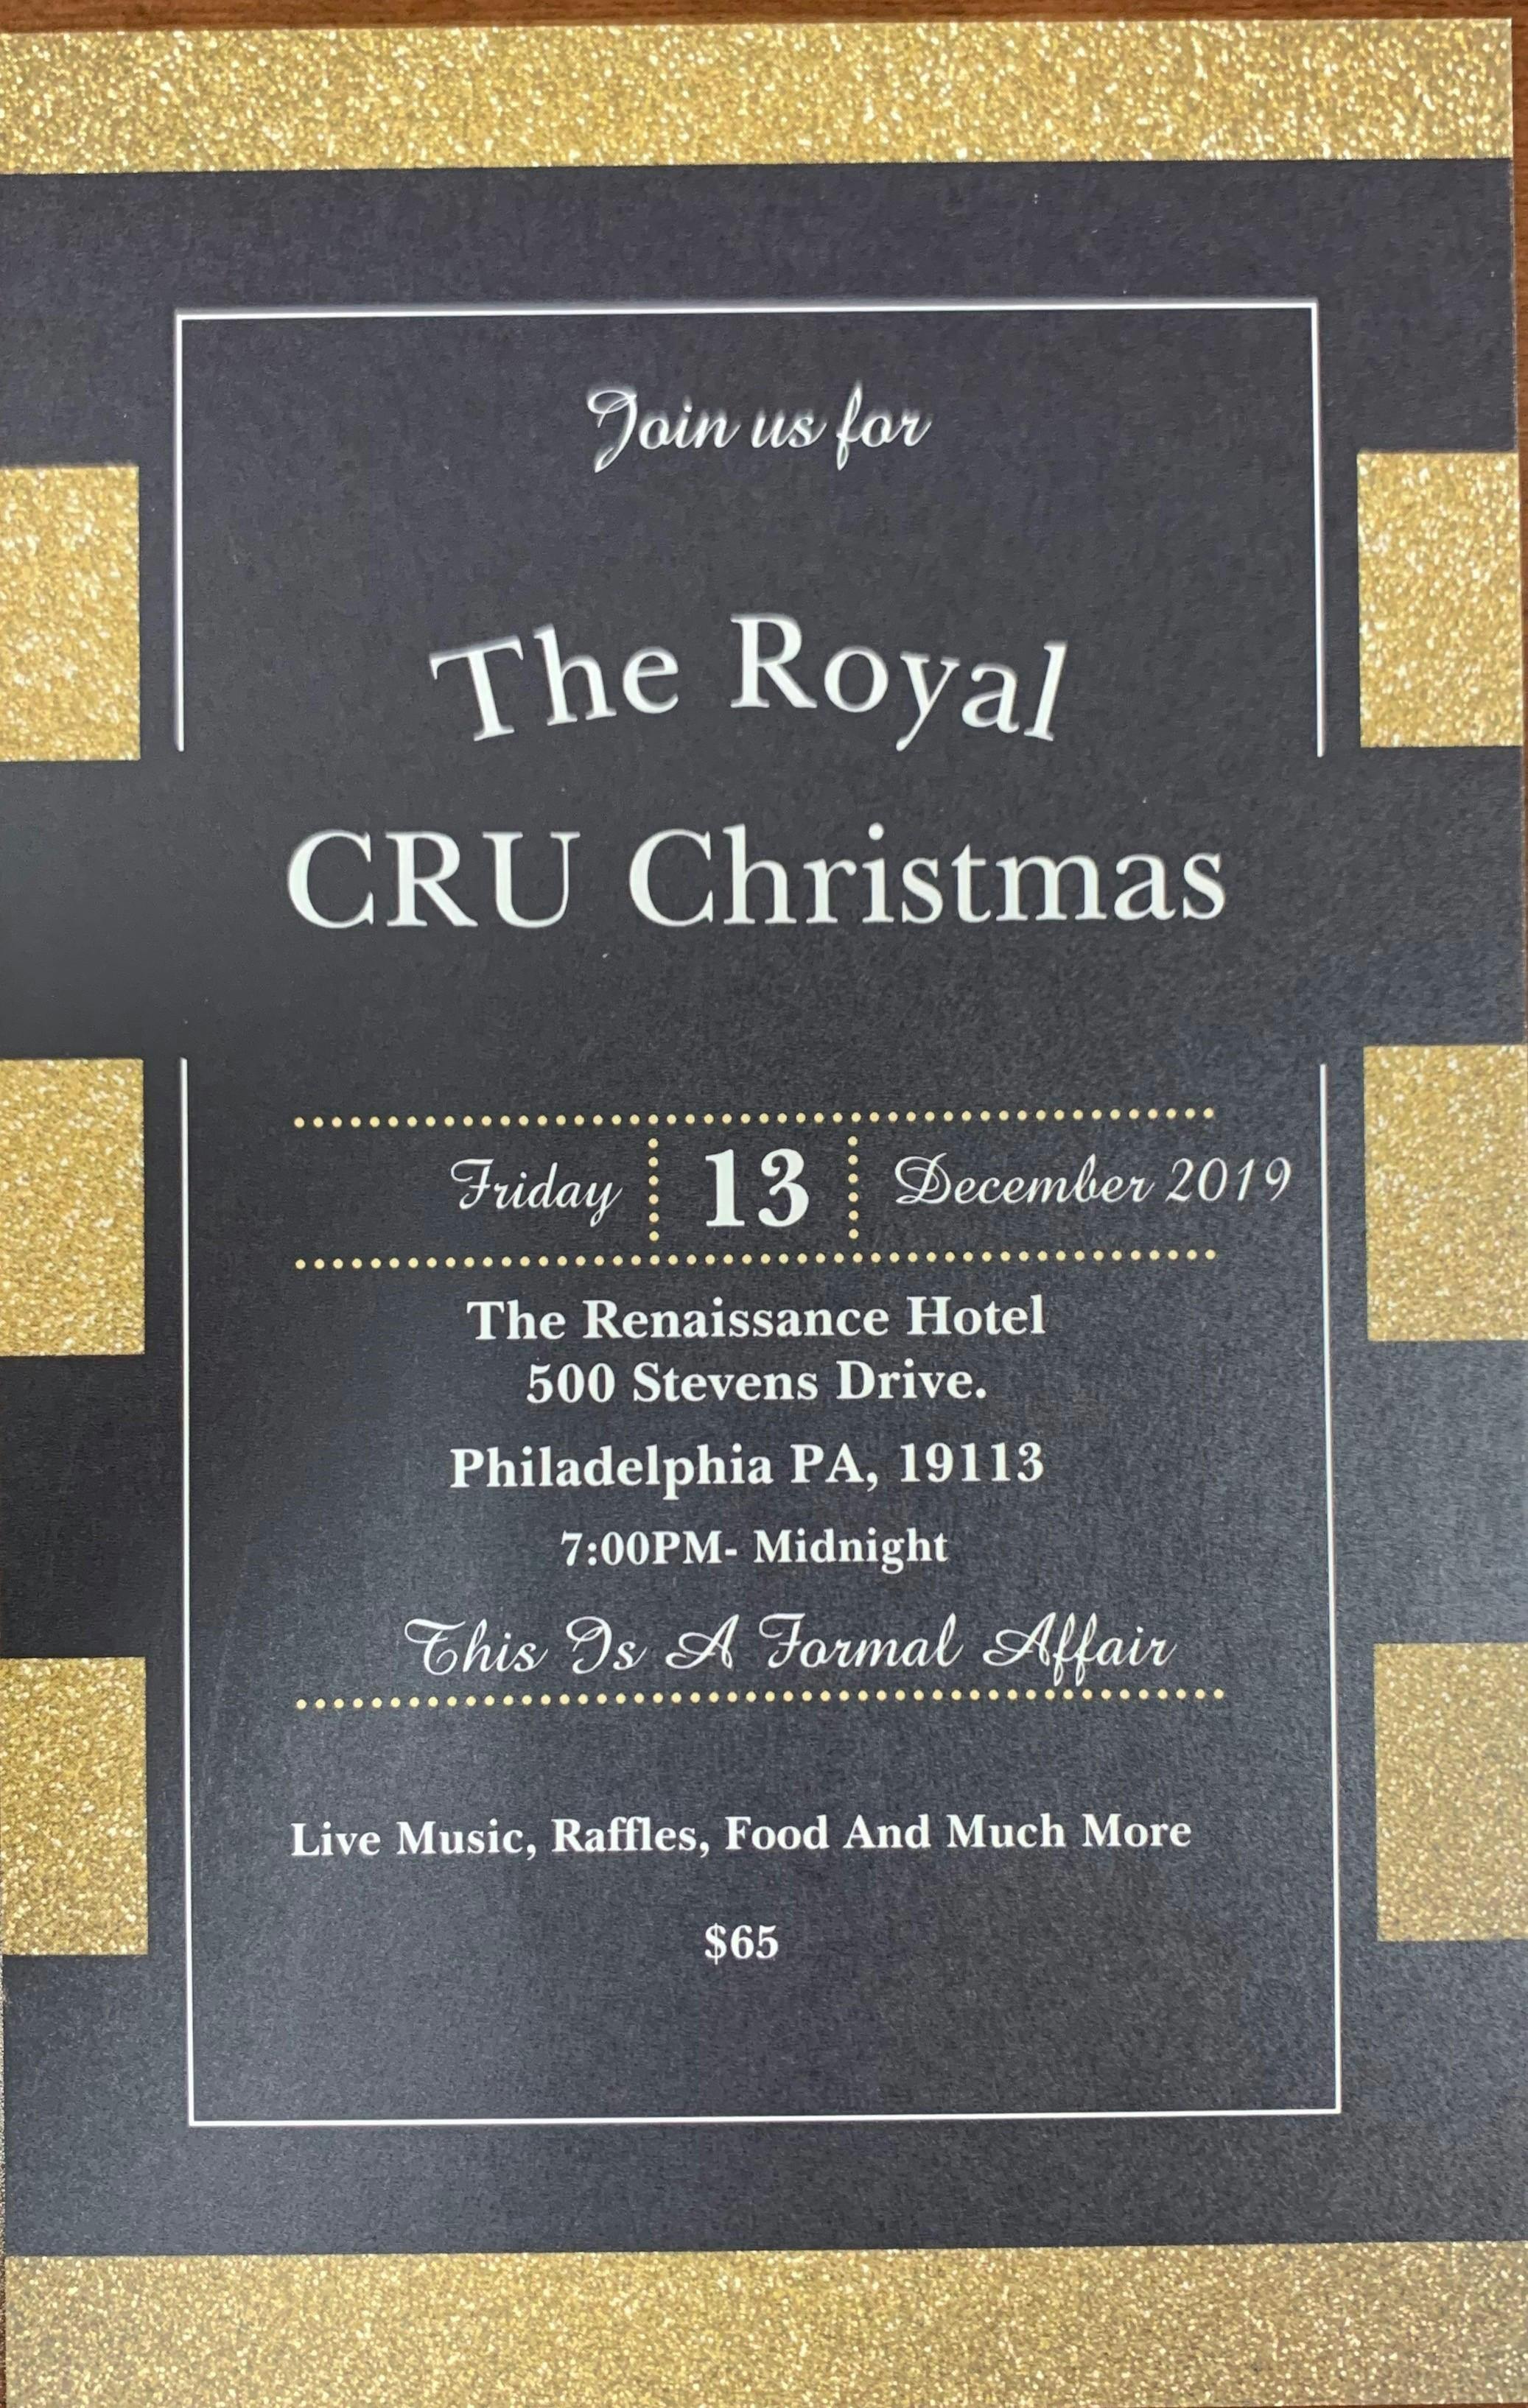 The Royal CRU Christmas